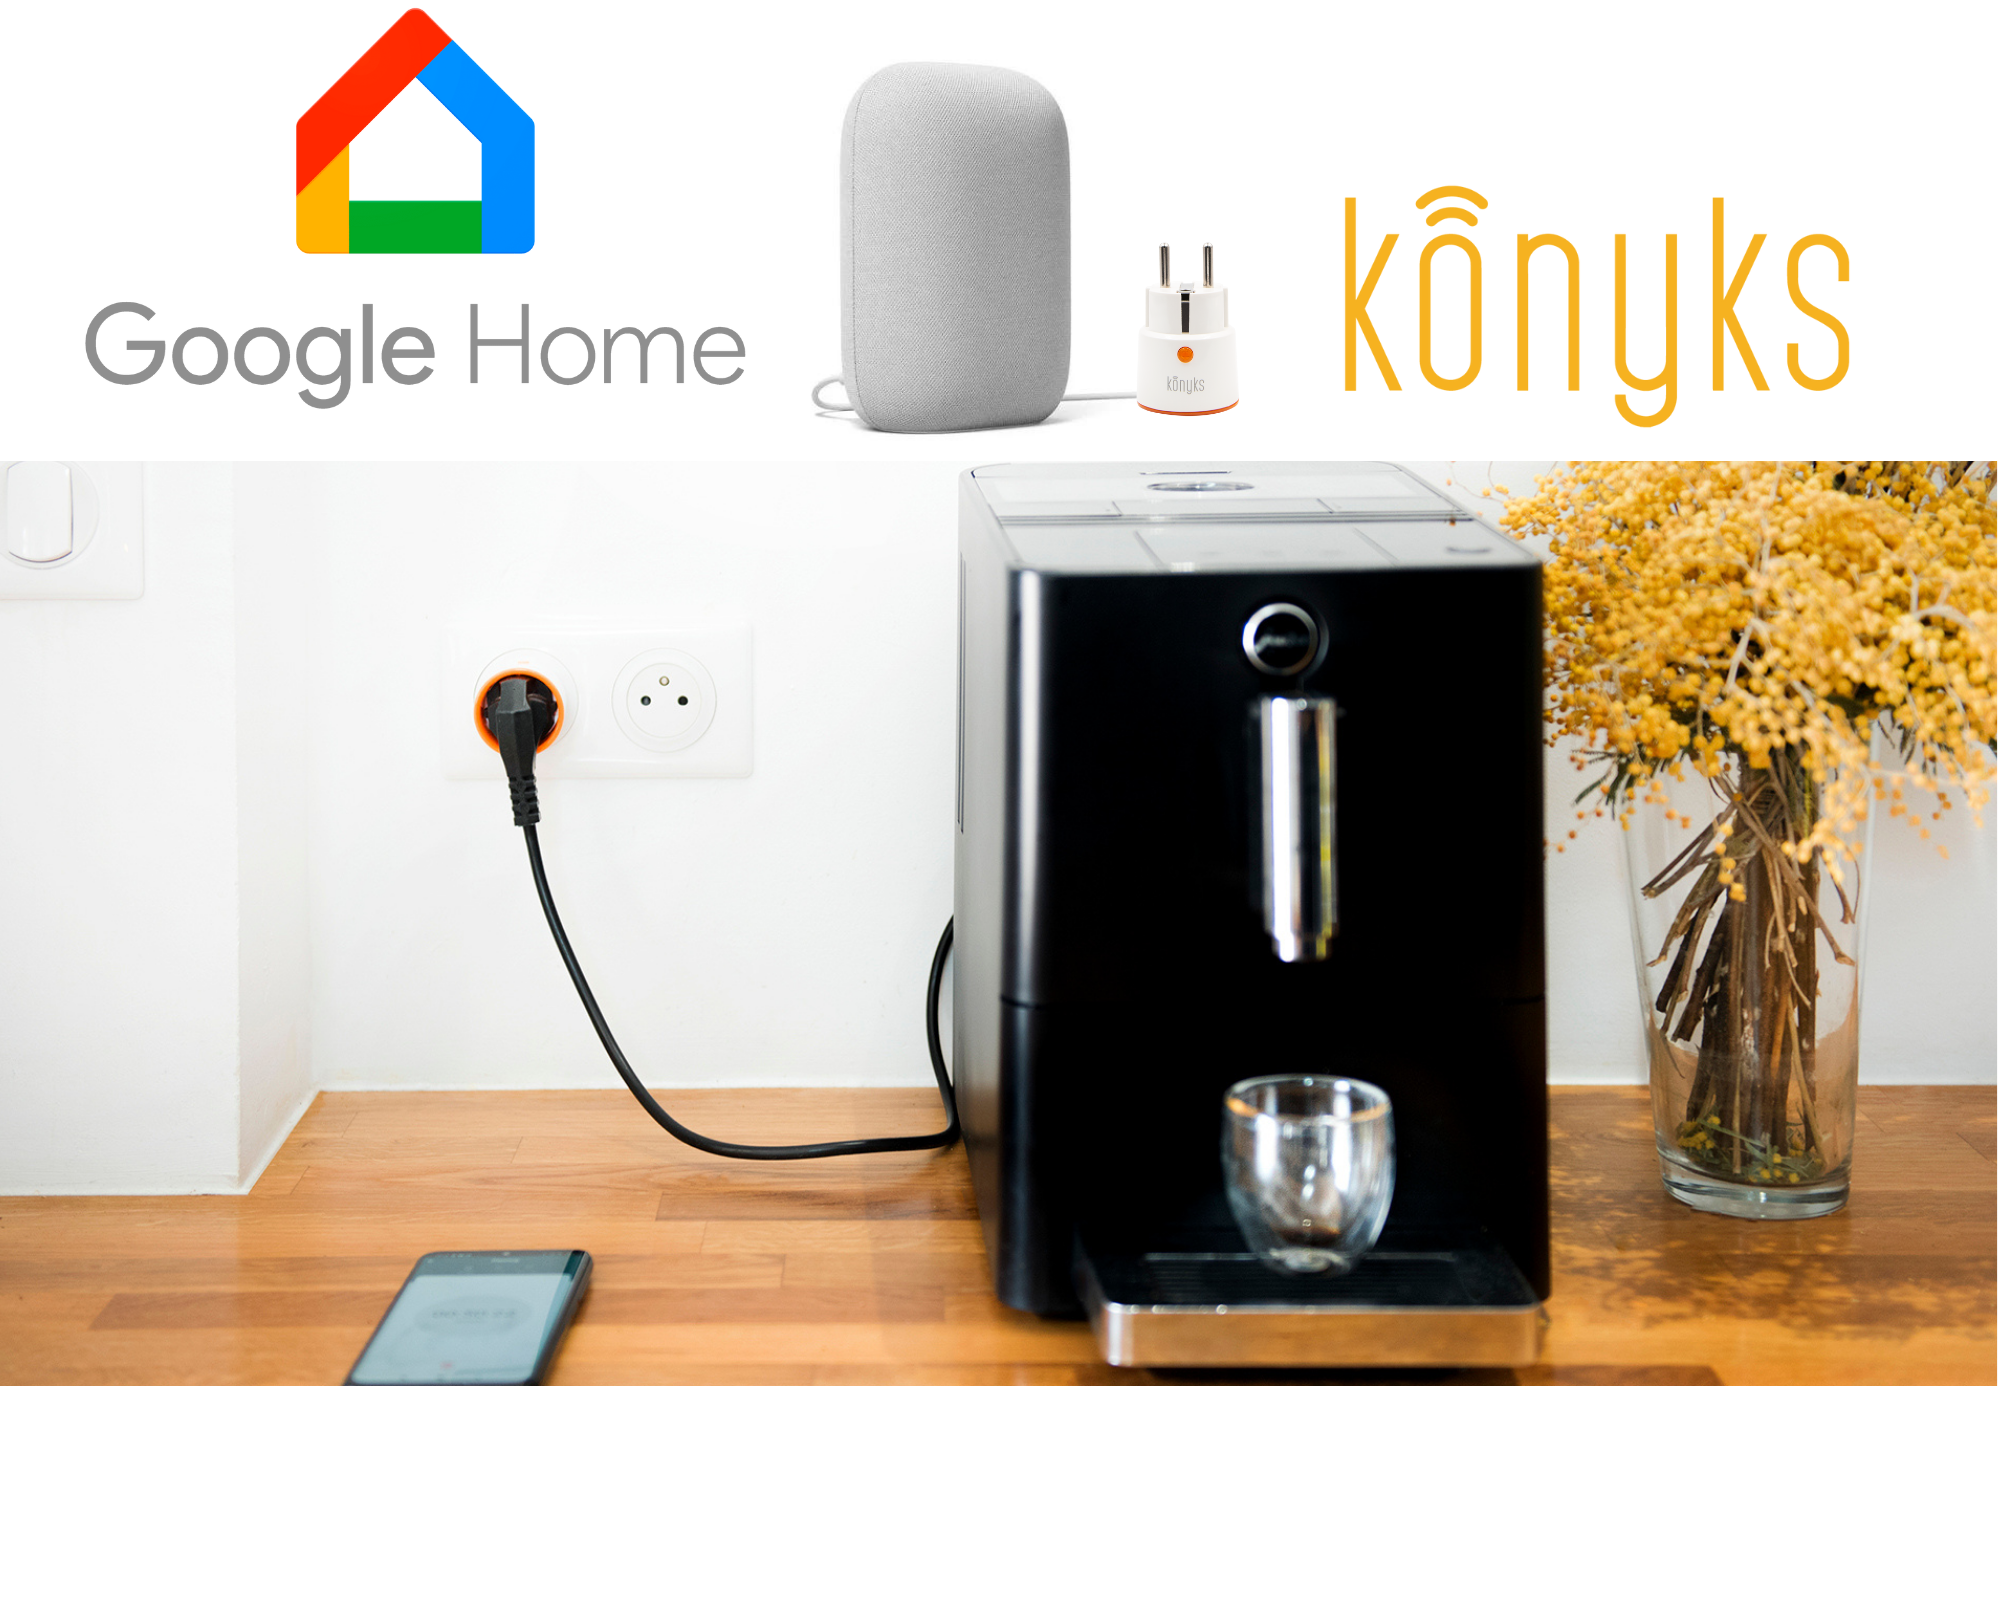 Une prise connectée compatible avec Google Home - Konyks